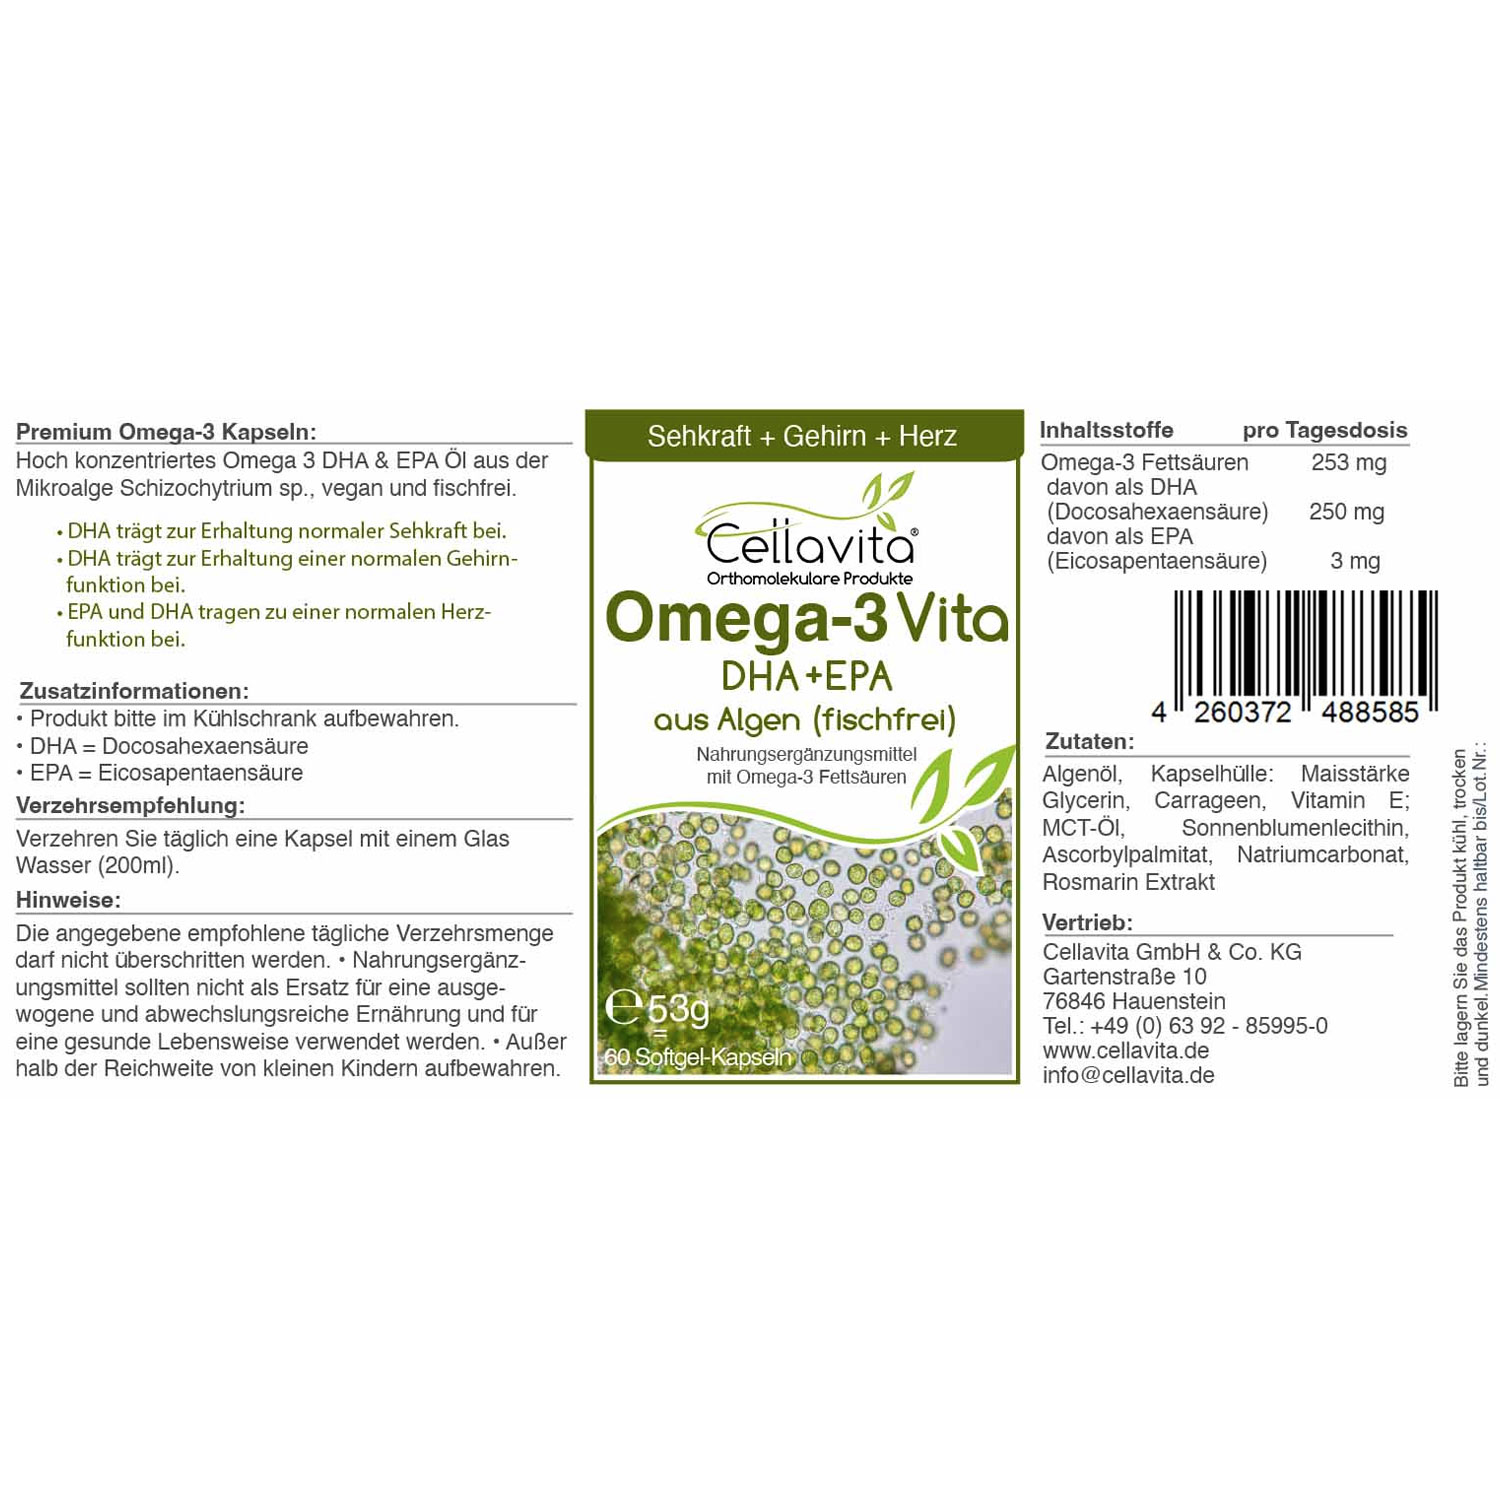 Omega-3 Vita DHA-EPA Kapseln von Cellavita - Etikett